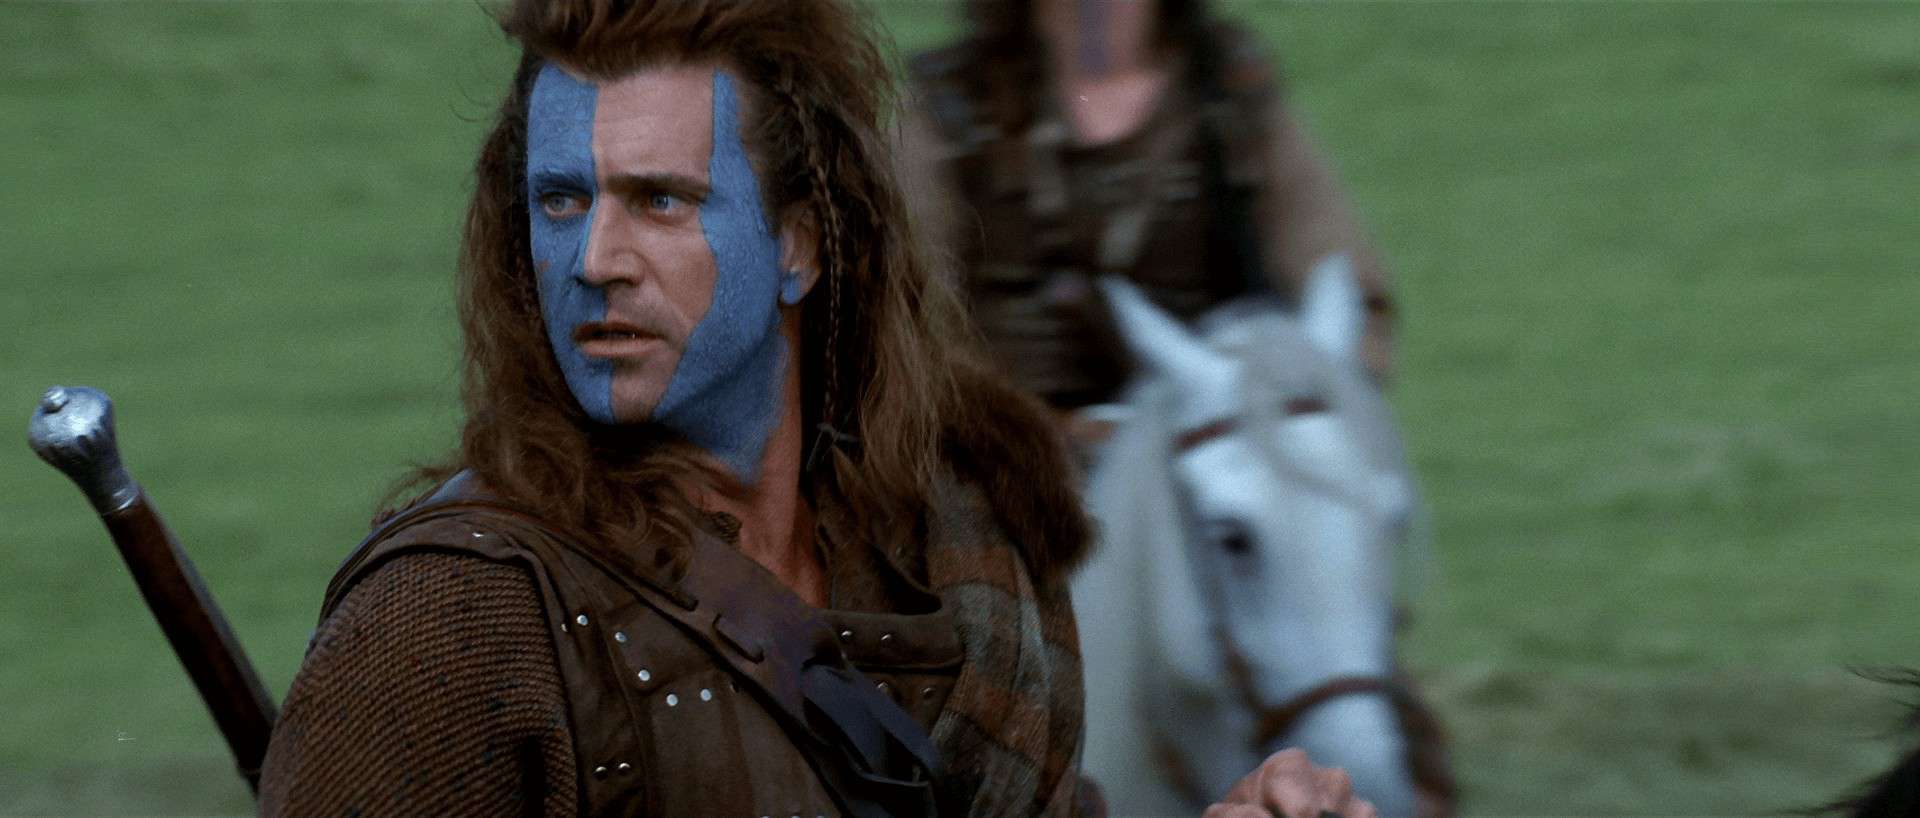 Personaggi iconici: William Wallace protagonista del film Braveheart